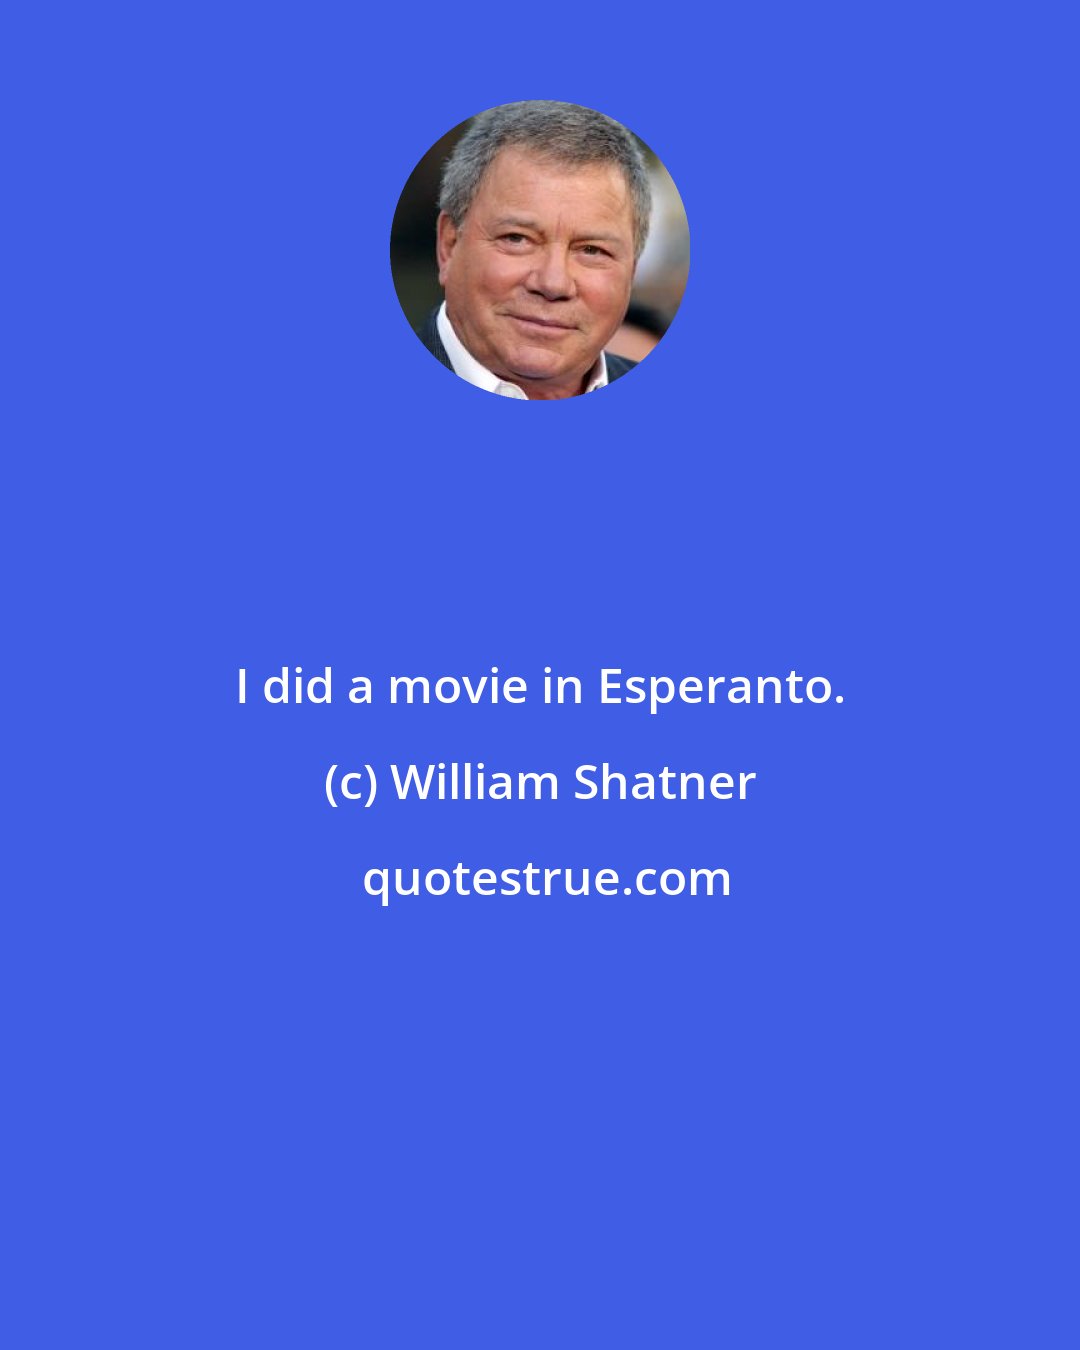 William Shatner: I did a movie in Esperanto.